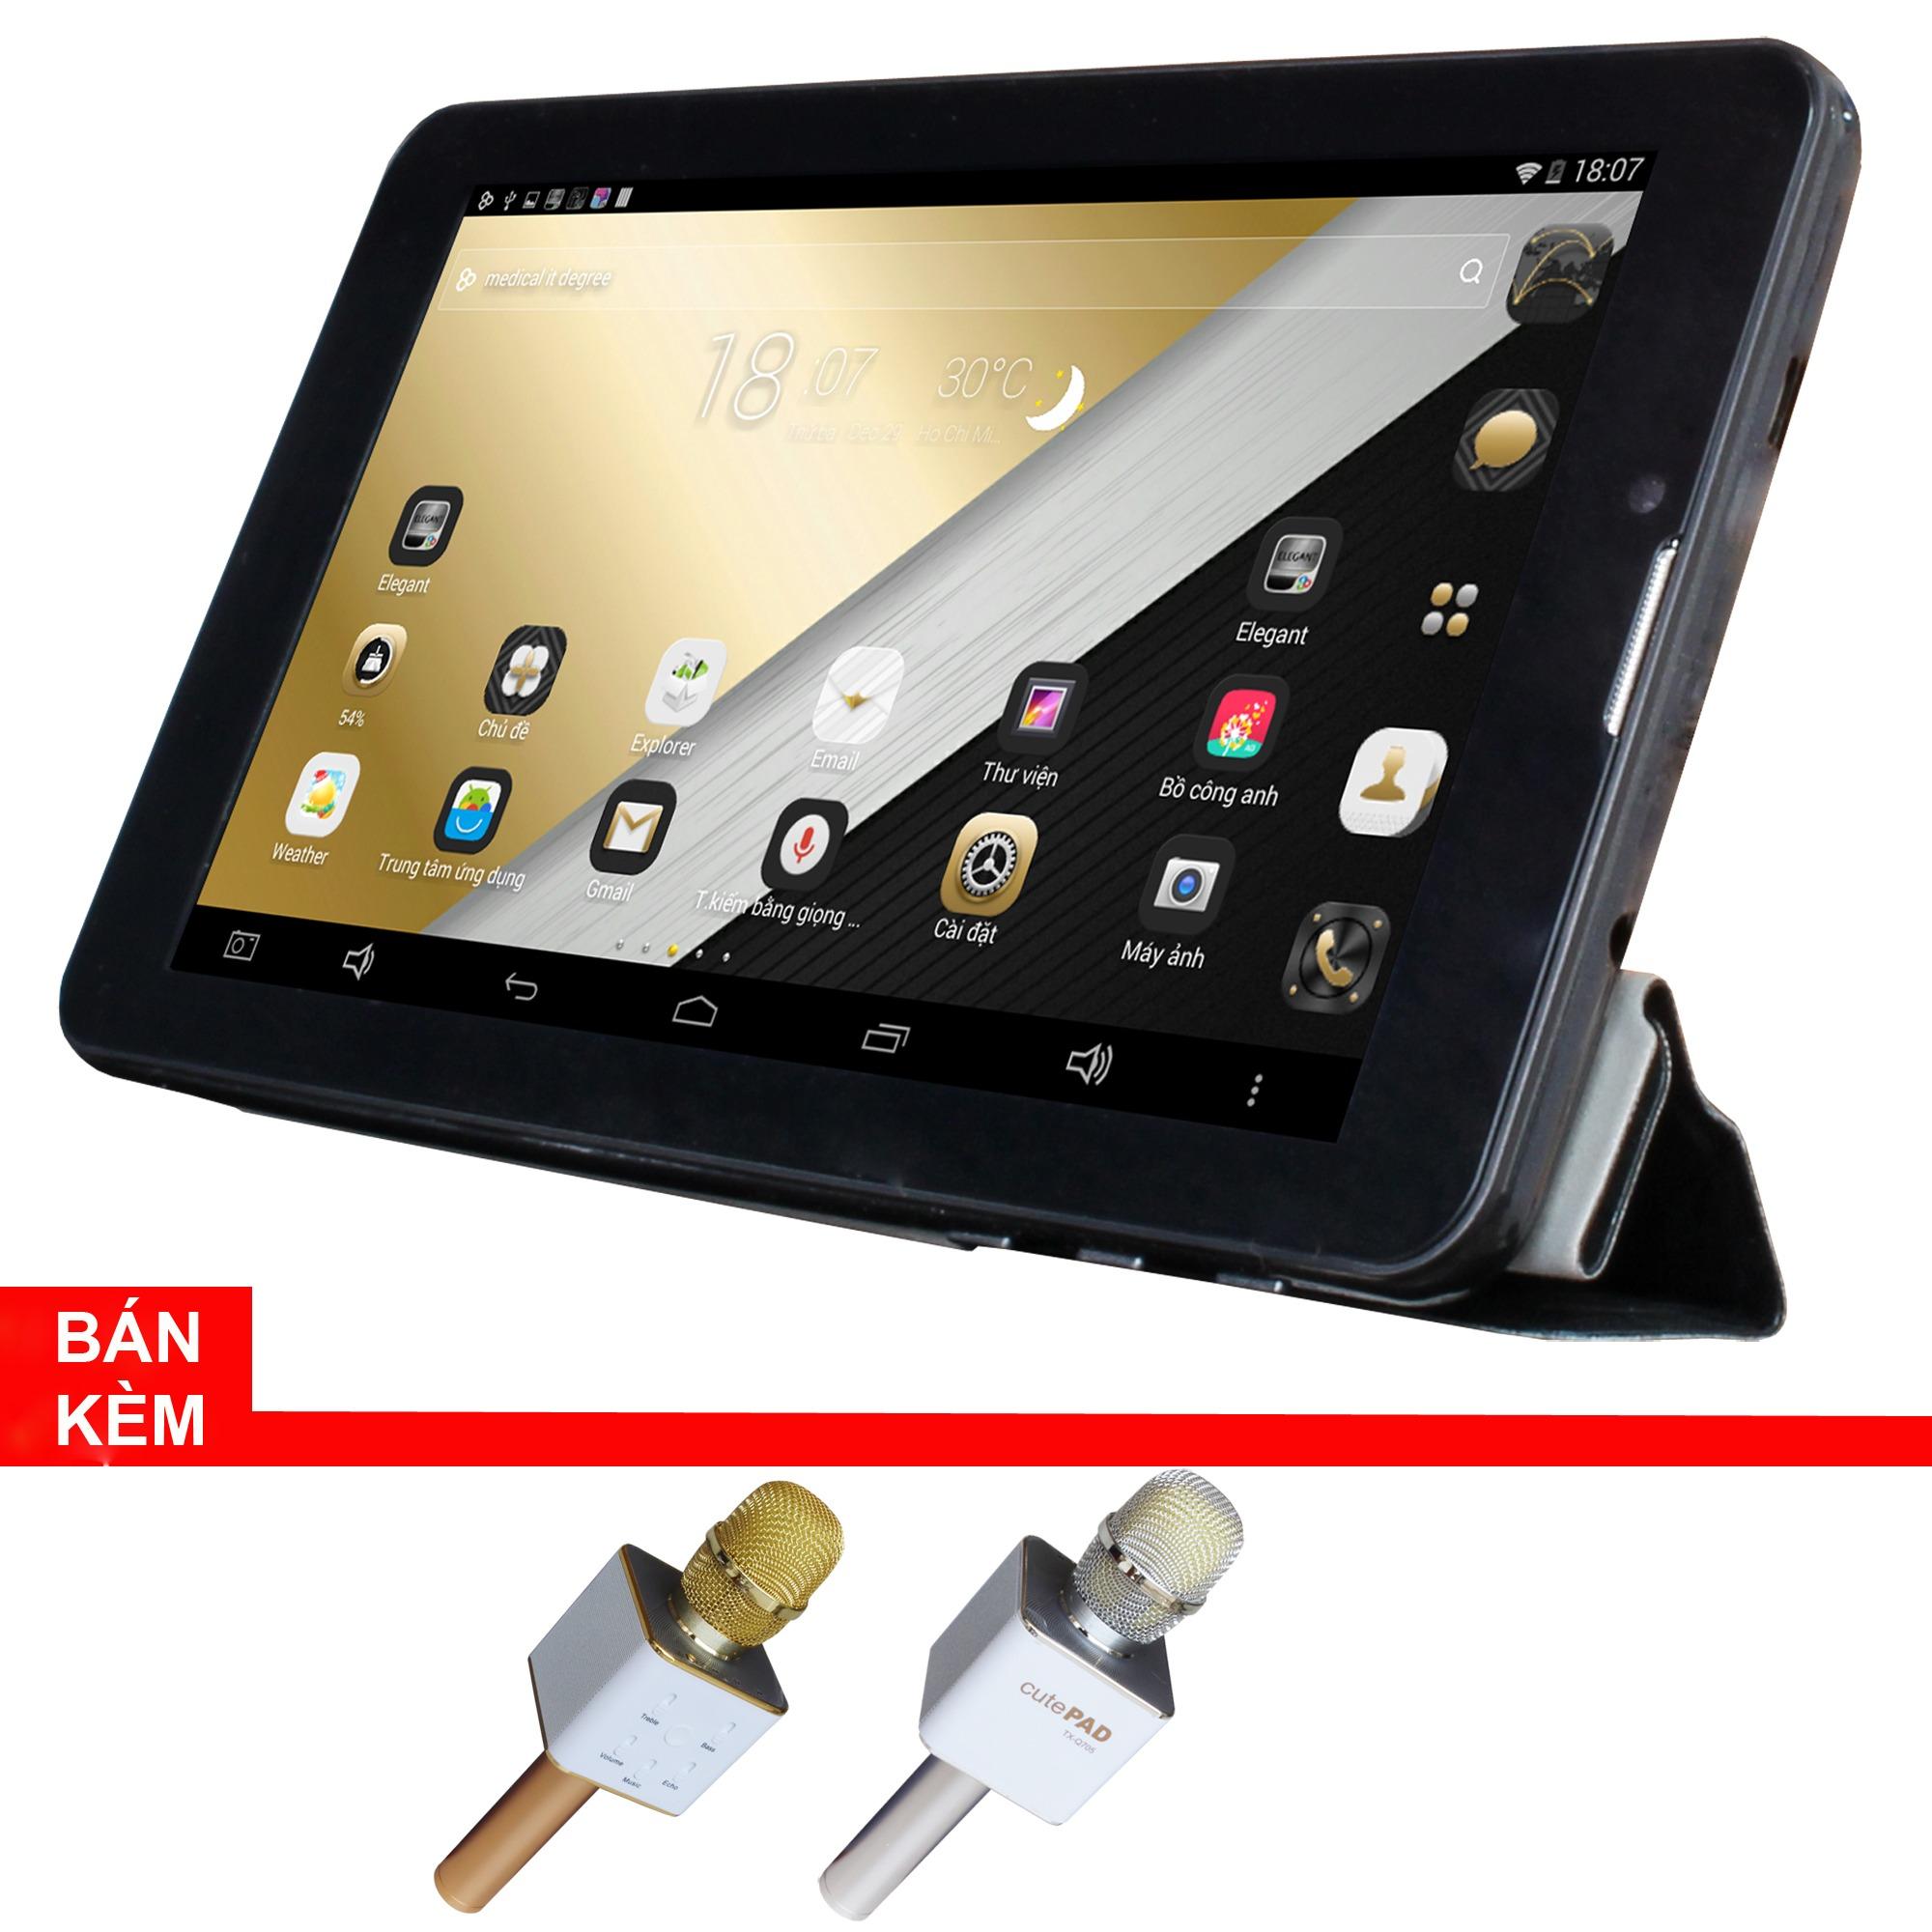 Máy tính bảng cutePad Tab 4 M7047 wifi/3G (Đen) + Micro Karaoke tích hợp loa Bluetooth cutePad TX-Q705 ngẫu nhiên-Hãng Phân...